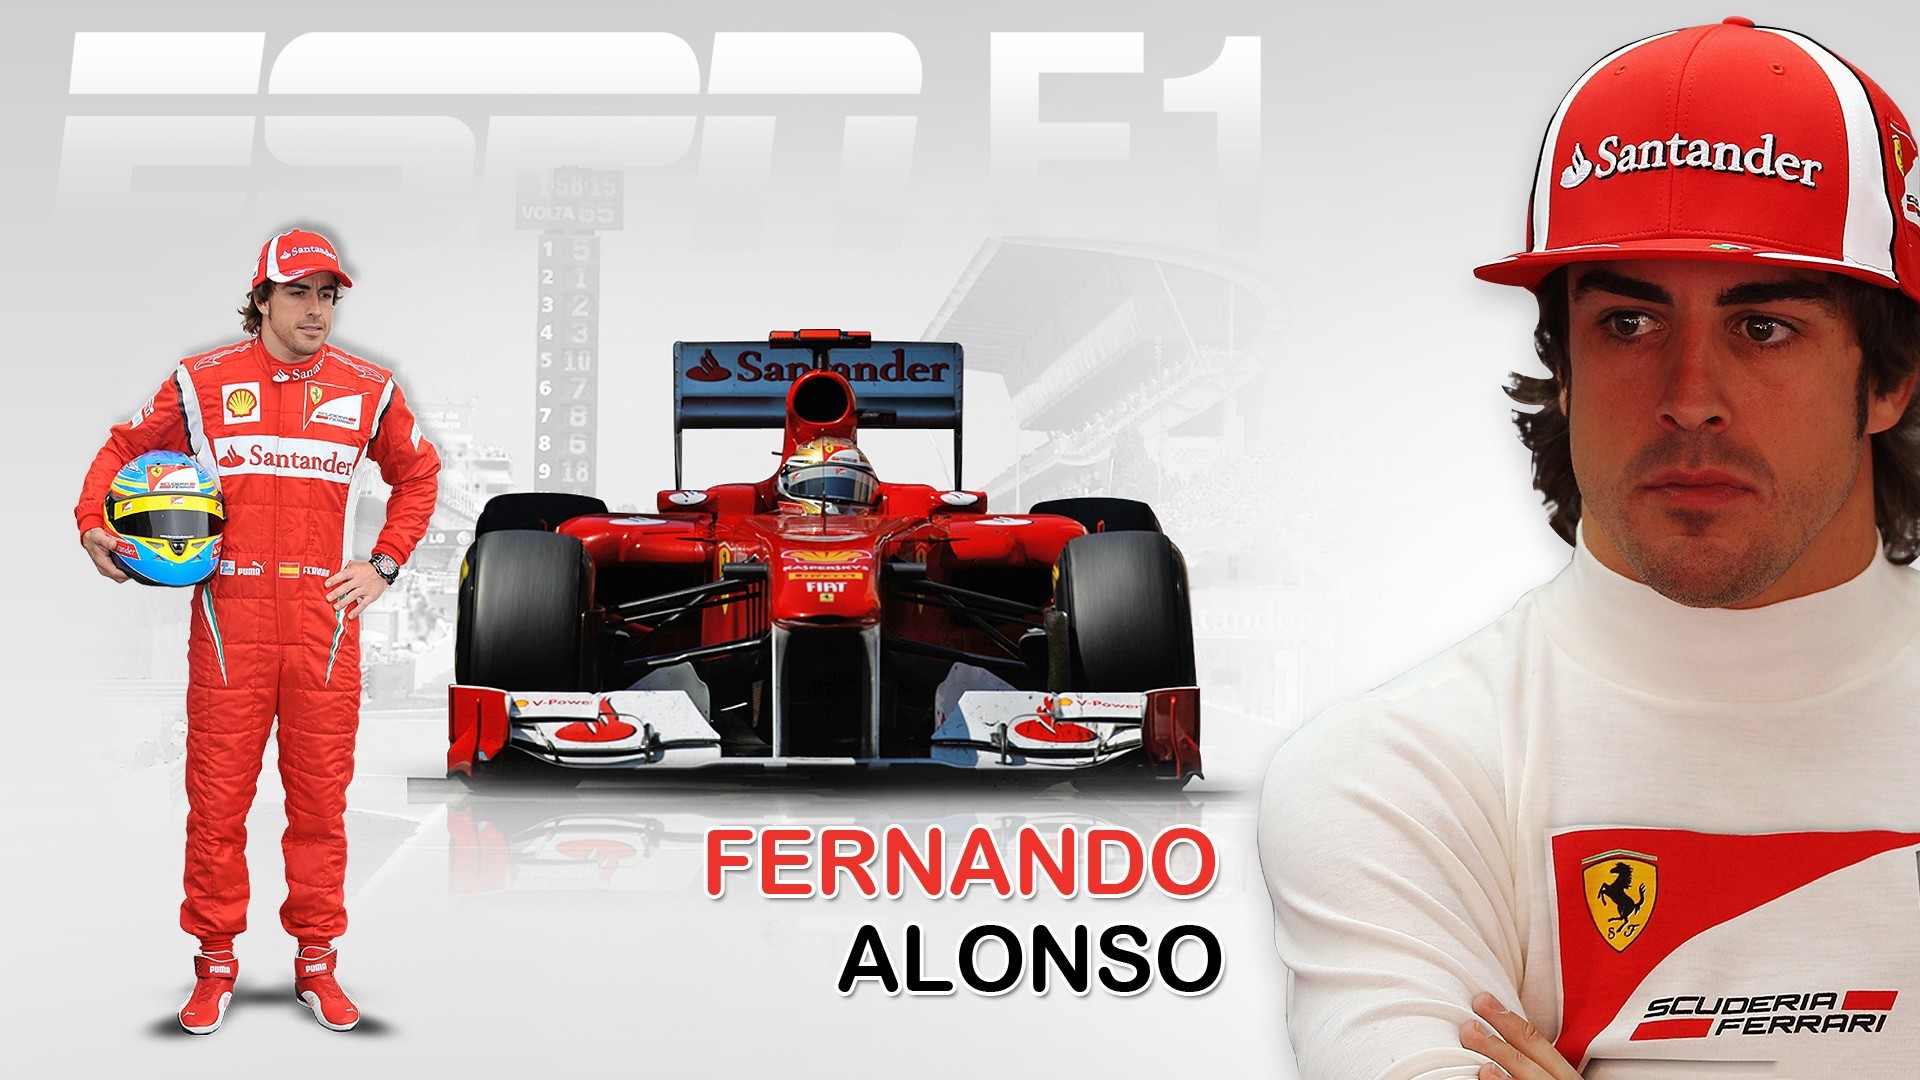 Formula 1, Scuderia Ferrari, Fernando Alonso Wallpaper